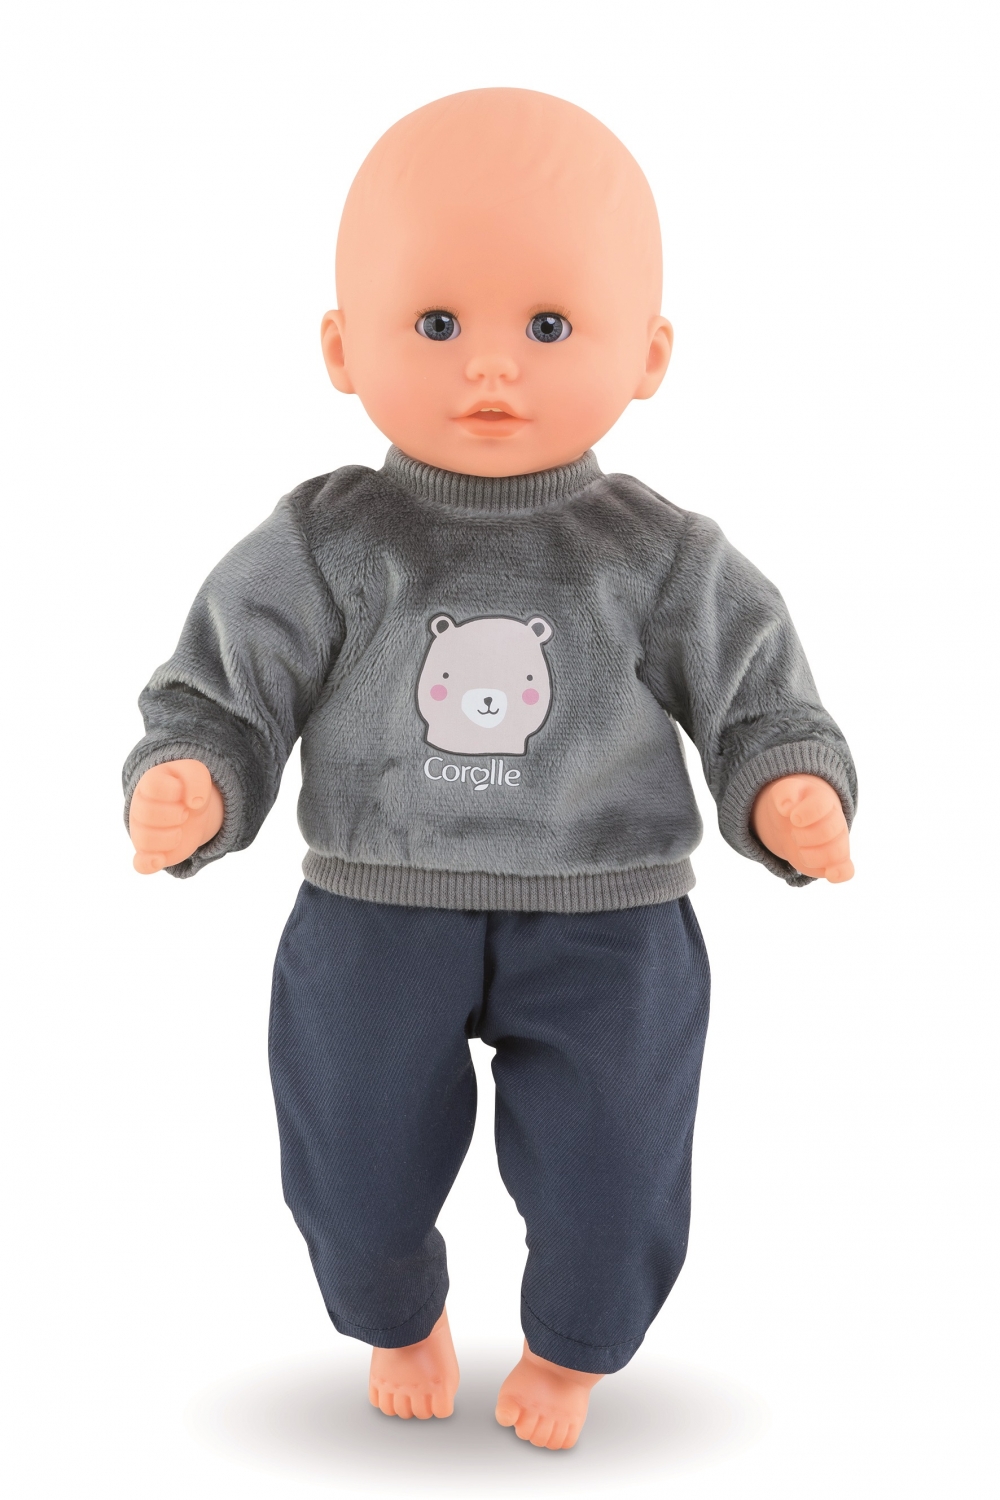 Kip Doorlaatbaarheid Helemaal droog sweater bear, vest, trui, poppenkleertjes babypop, 30cm pop kleertjes